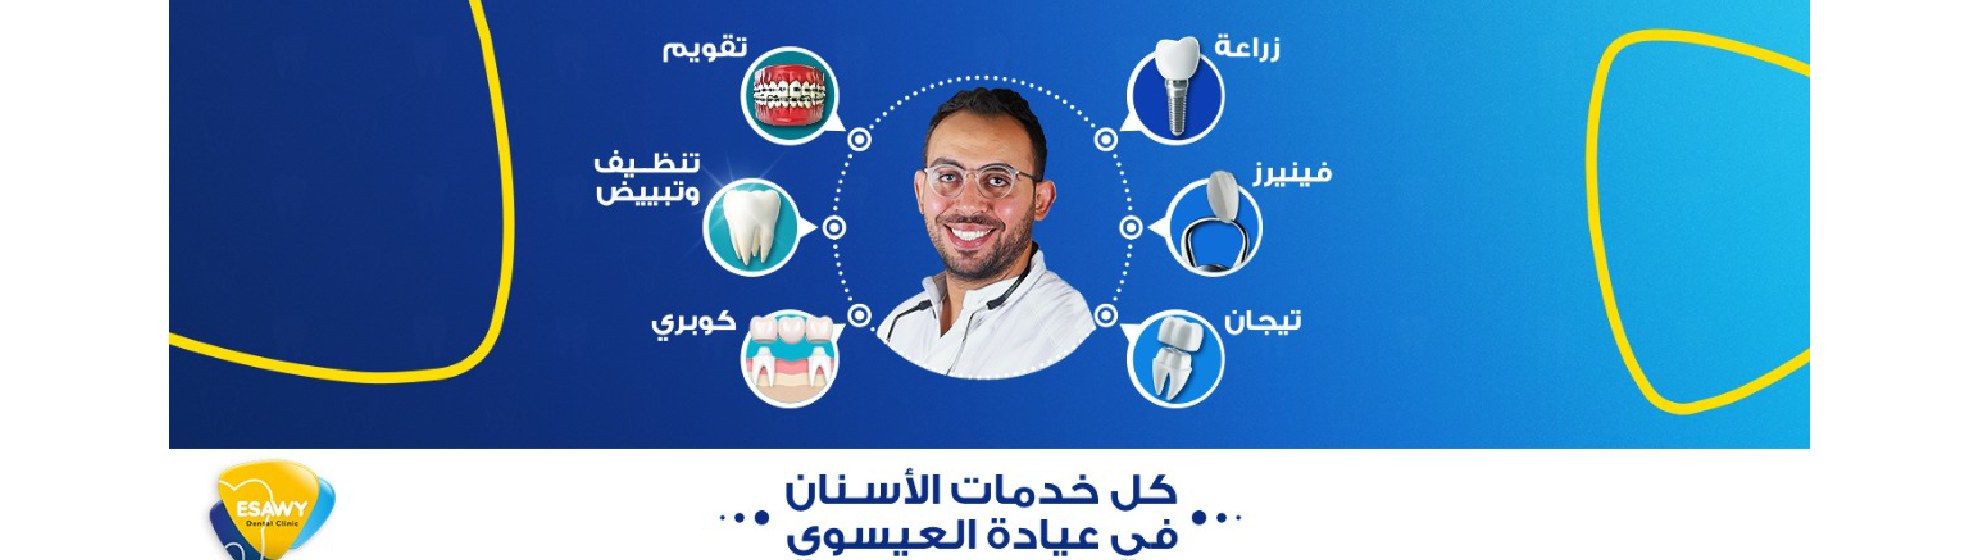 دكتور محمد حسام العيسوي